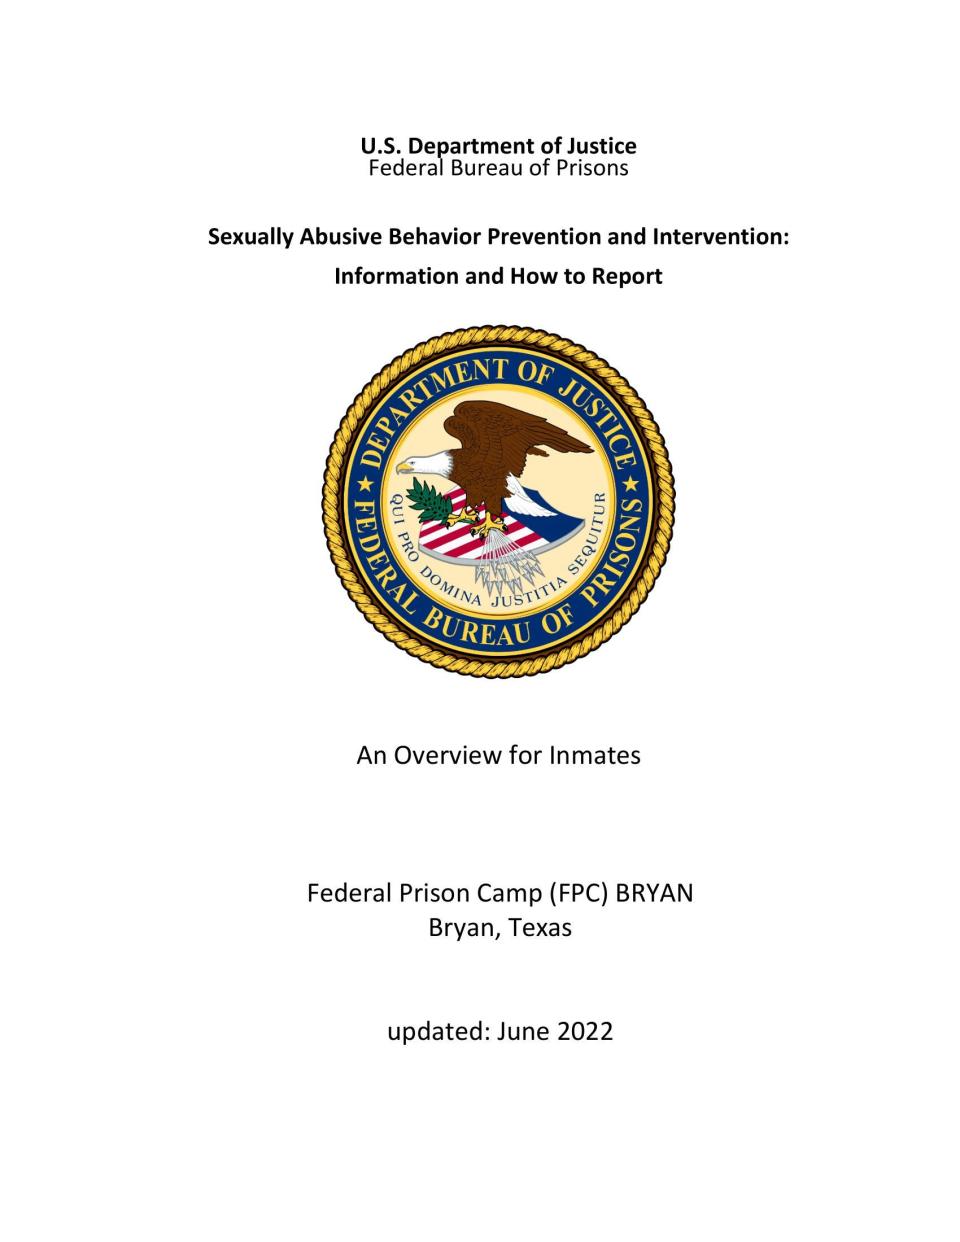 Federal Prison Camp Bryan orientation handbook